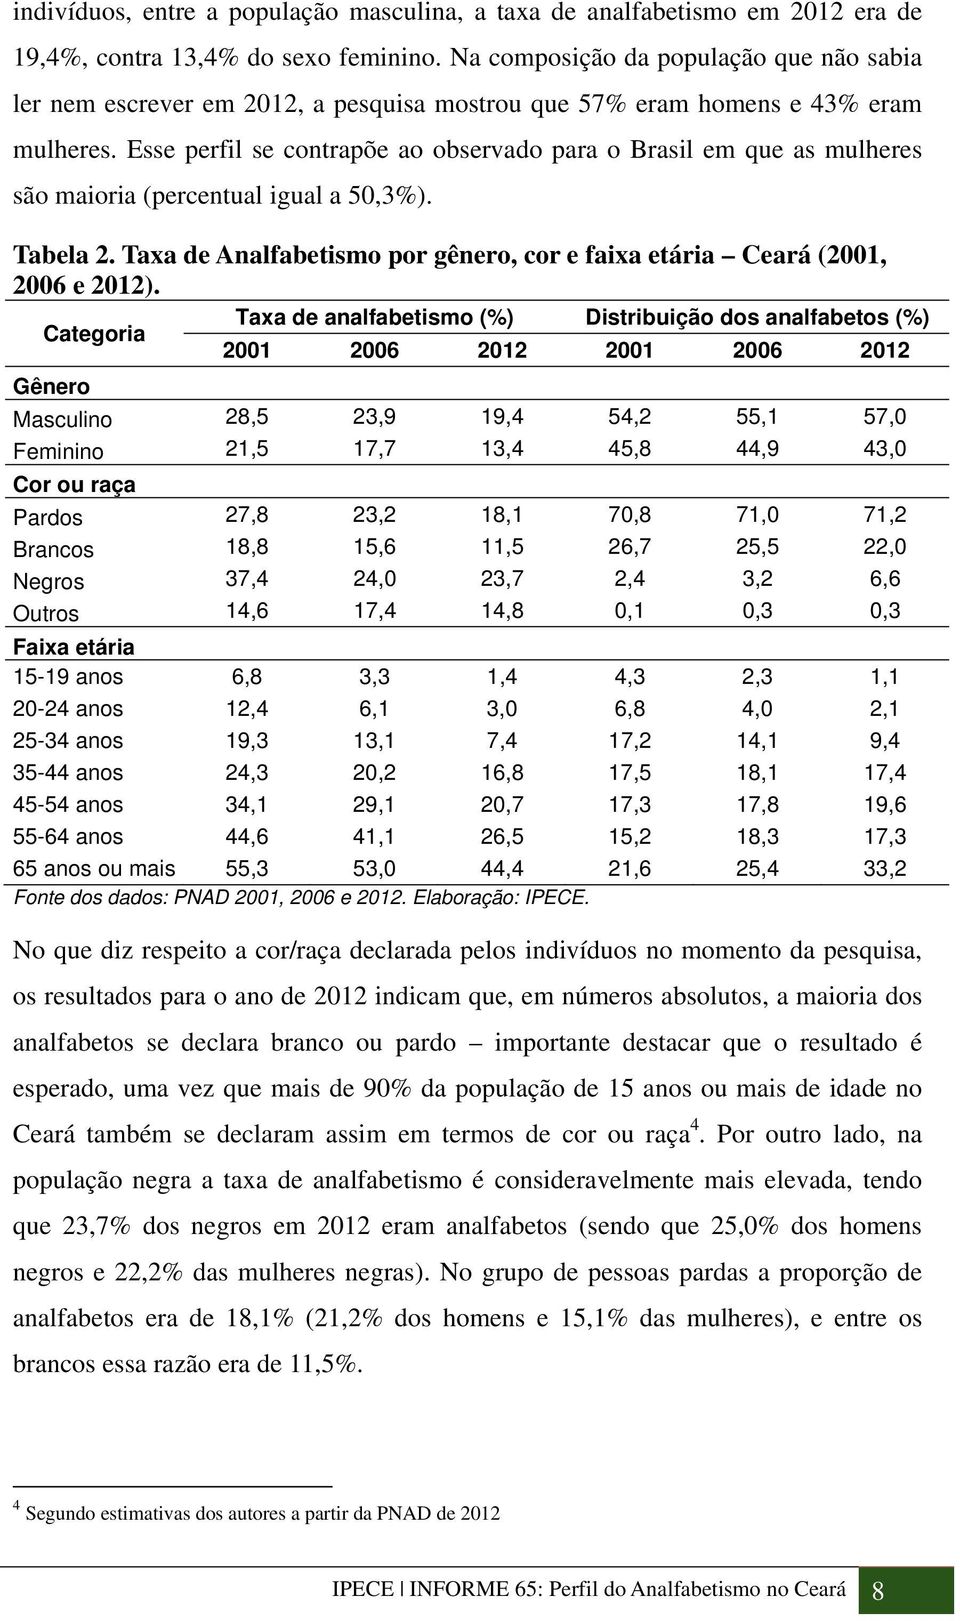 Esse perfil se contrapõe ao observado para o Brasil em que as mulheres são maioria (percentual igual a 50,3%). Tabela 2. Taxa de Analfabetismo por gênero, cor e faixa etária Ceará (2001, 2006 e 2012).